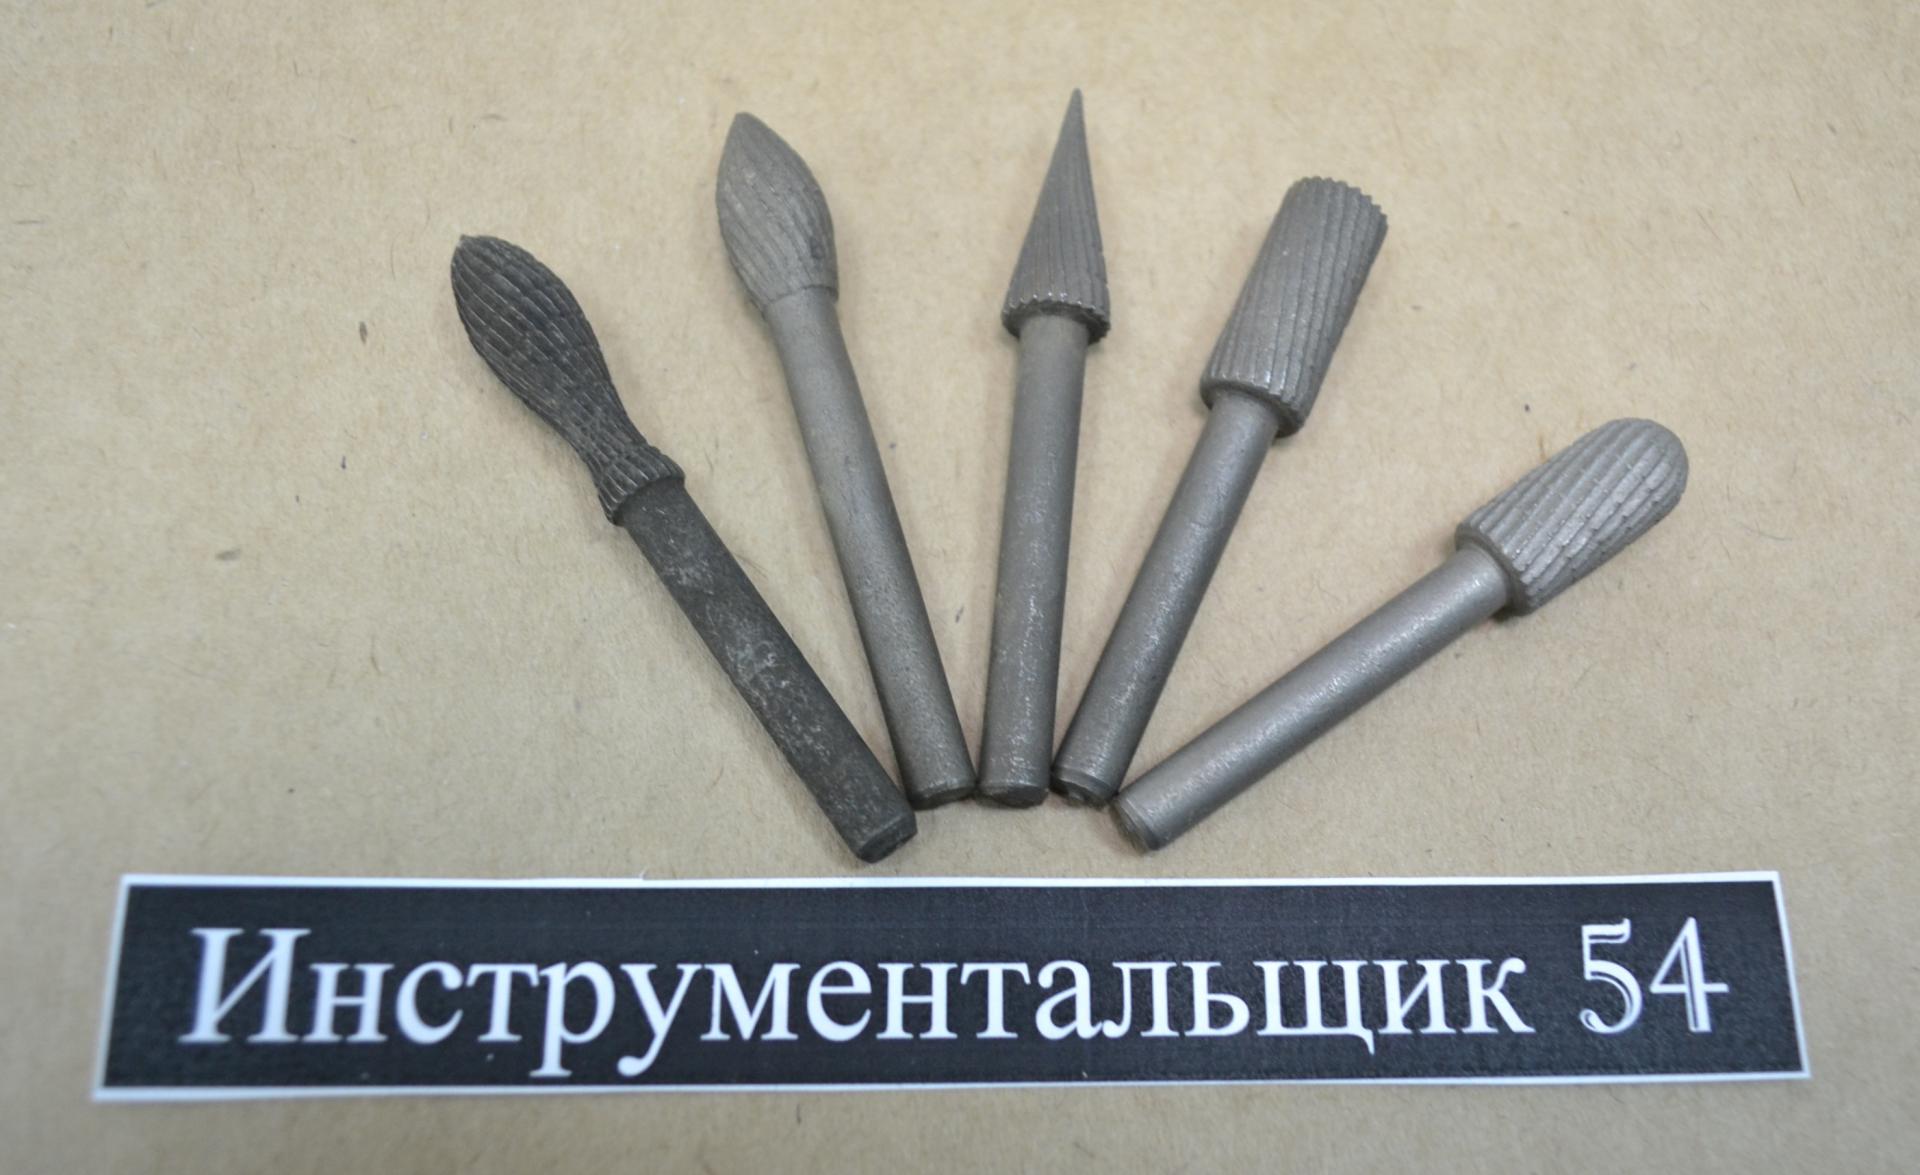  борфрез по металлу  в Новосибирске цена 250 Р на DIRECTLOT .